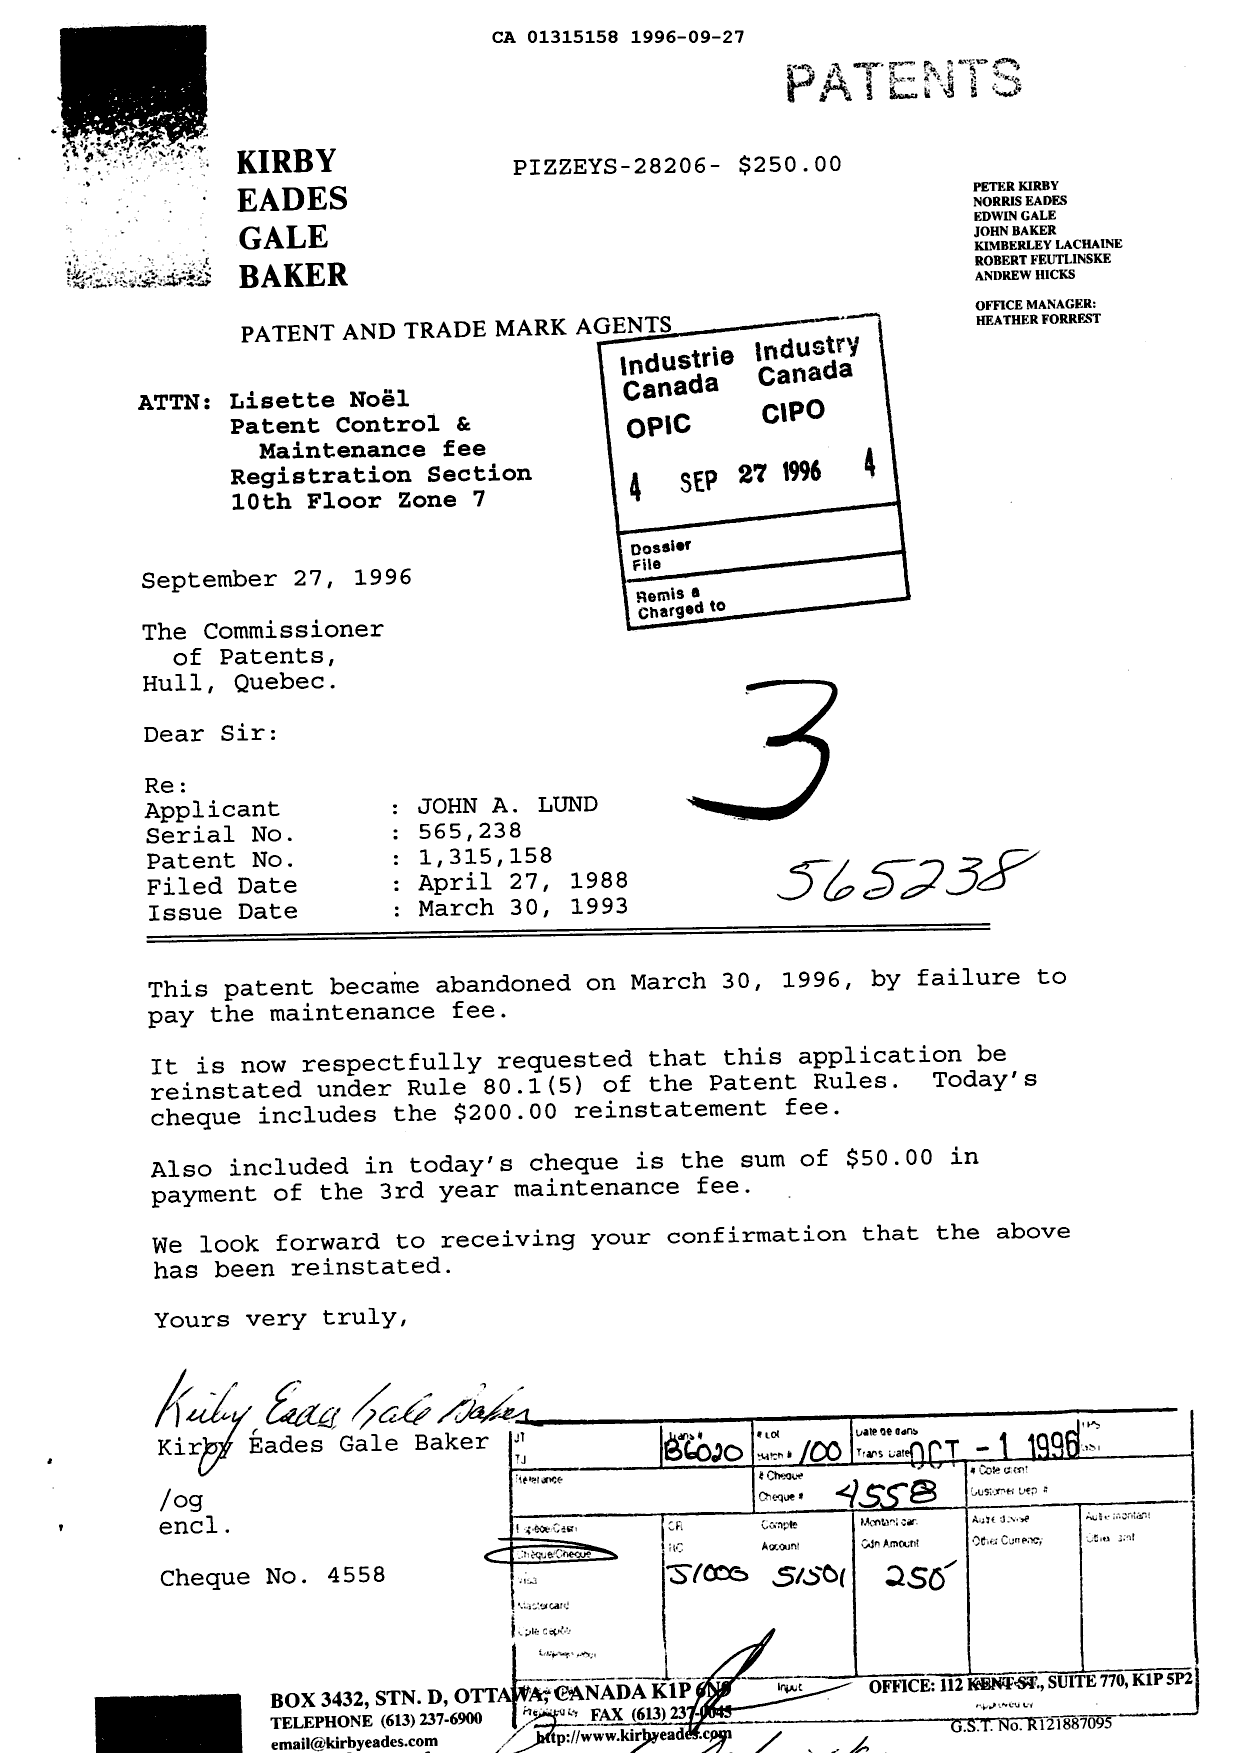 Document de brevet canadien 1315158. Taxes 19960927. Image 1 de 1